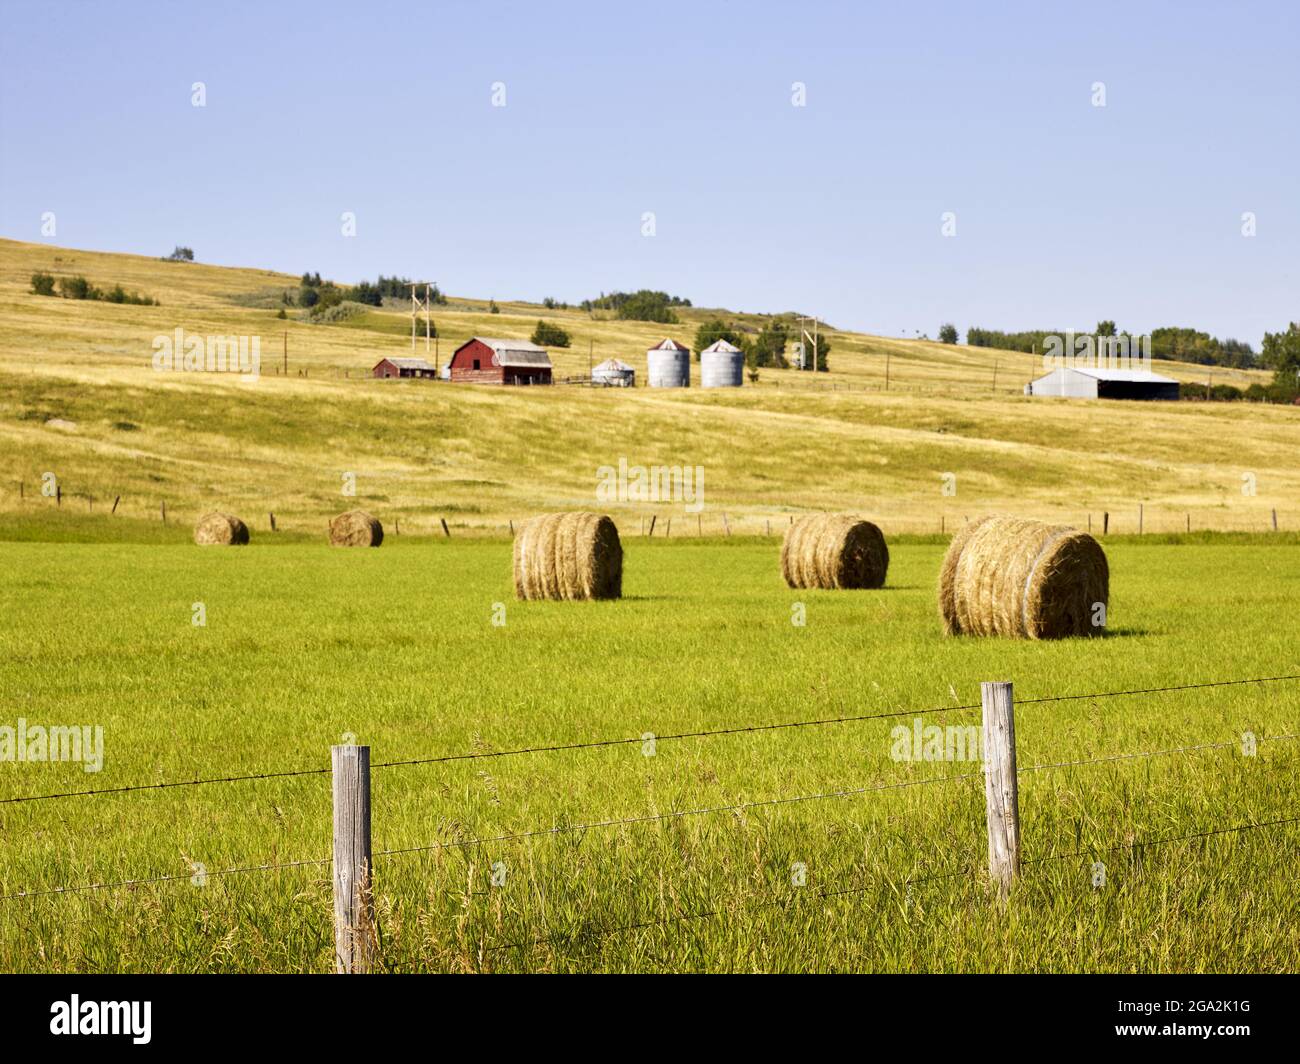 Terres agricoles avec des granges et des silos à grains à flanc de coteau avec des balles de foin roulées dans un champ en dessous avec une clôture de poteau et de fil; Alberta, Canada Banque D'Images